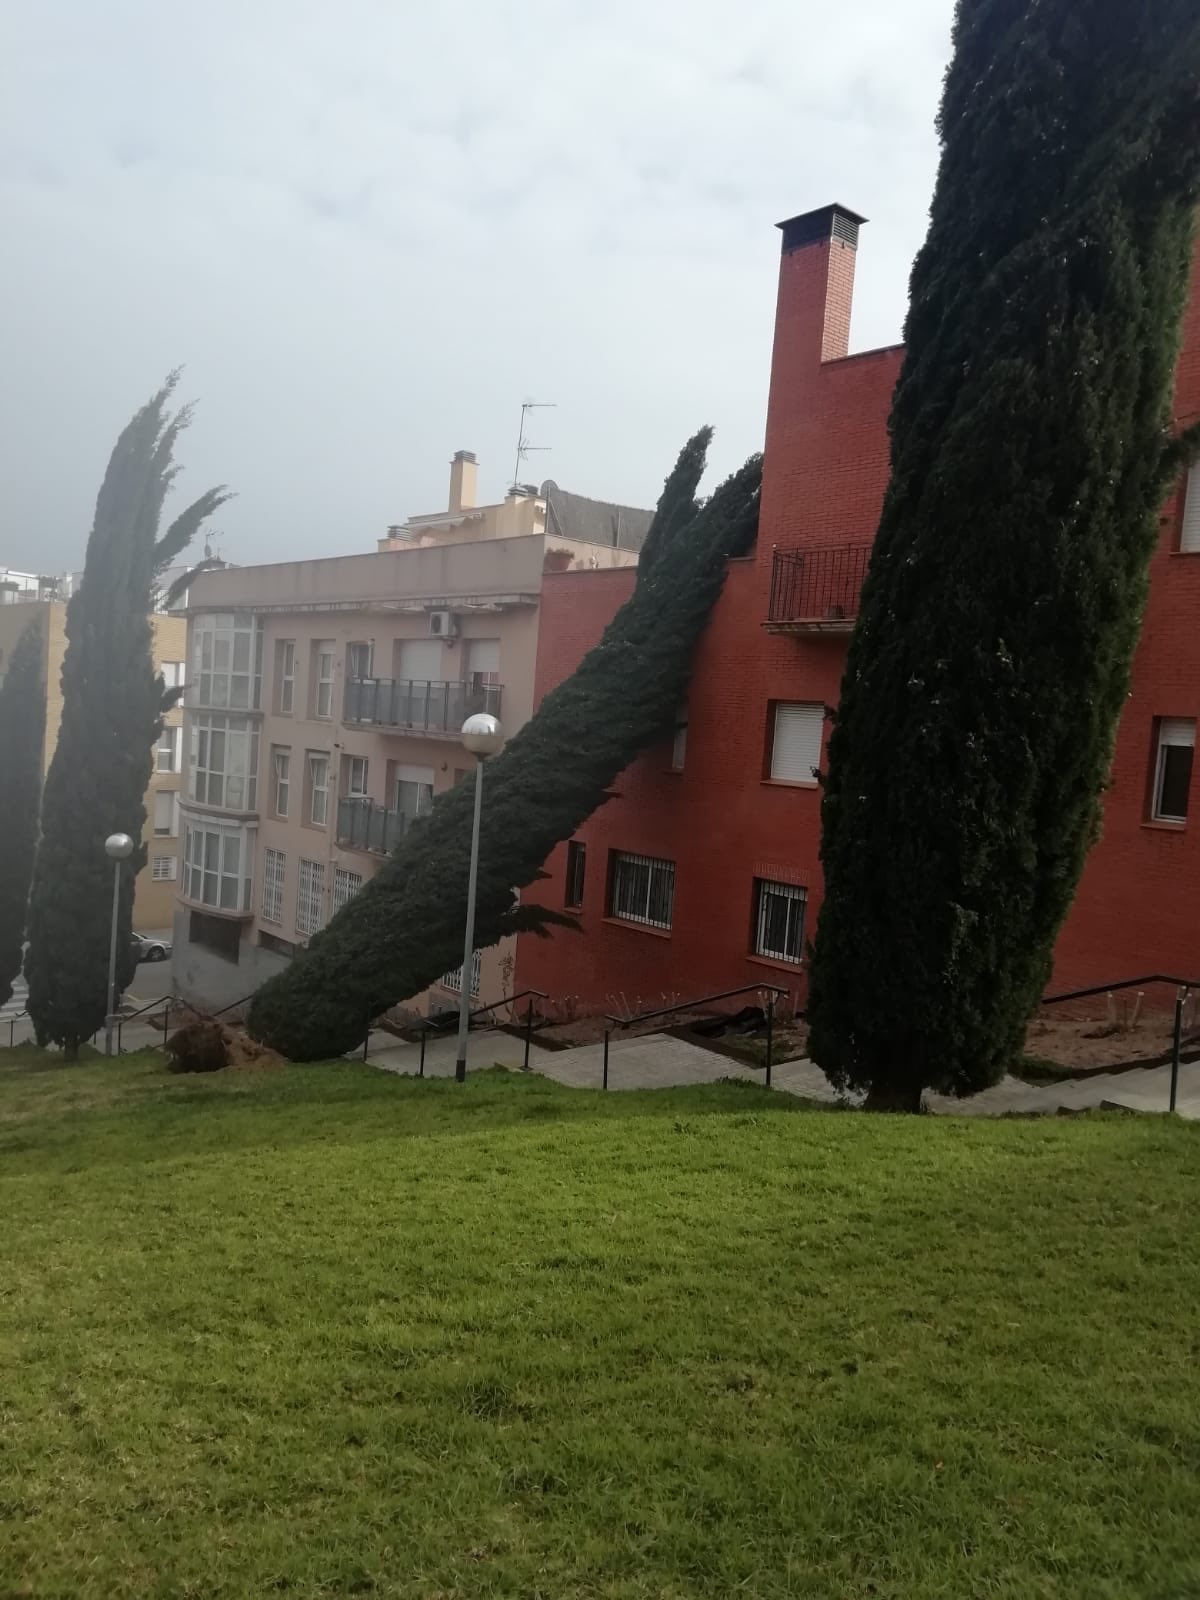 Efectes del temporal a Mataró. Foto: Aj. Mataró